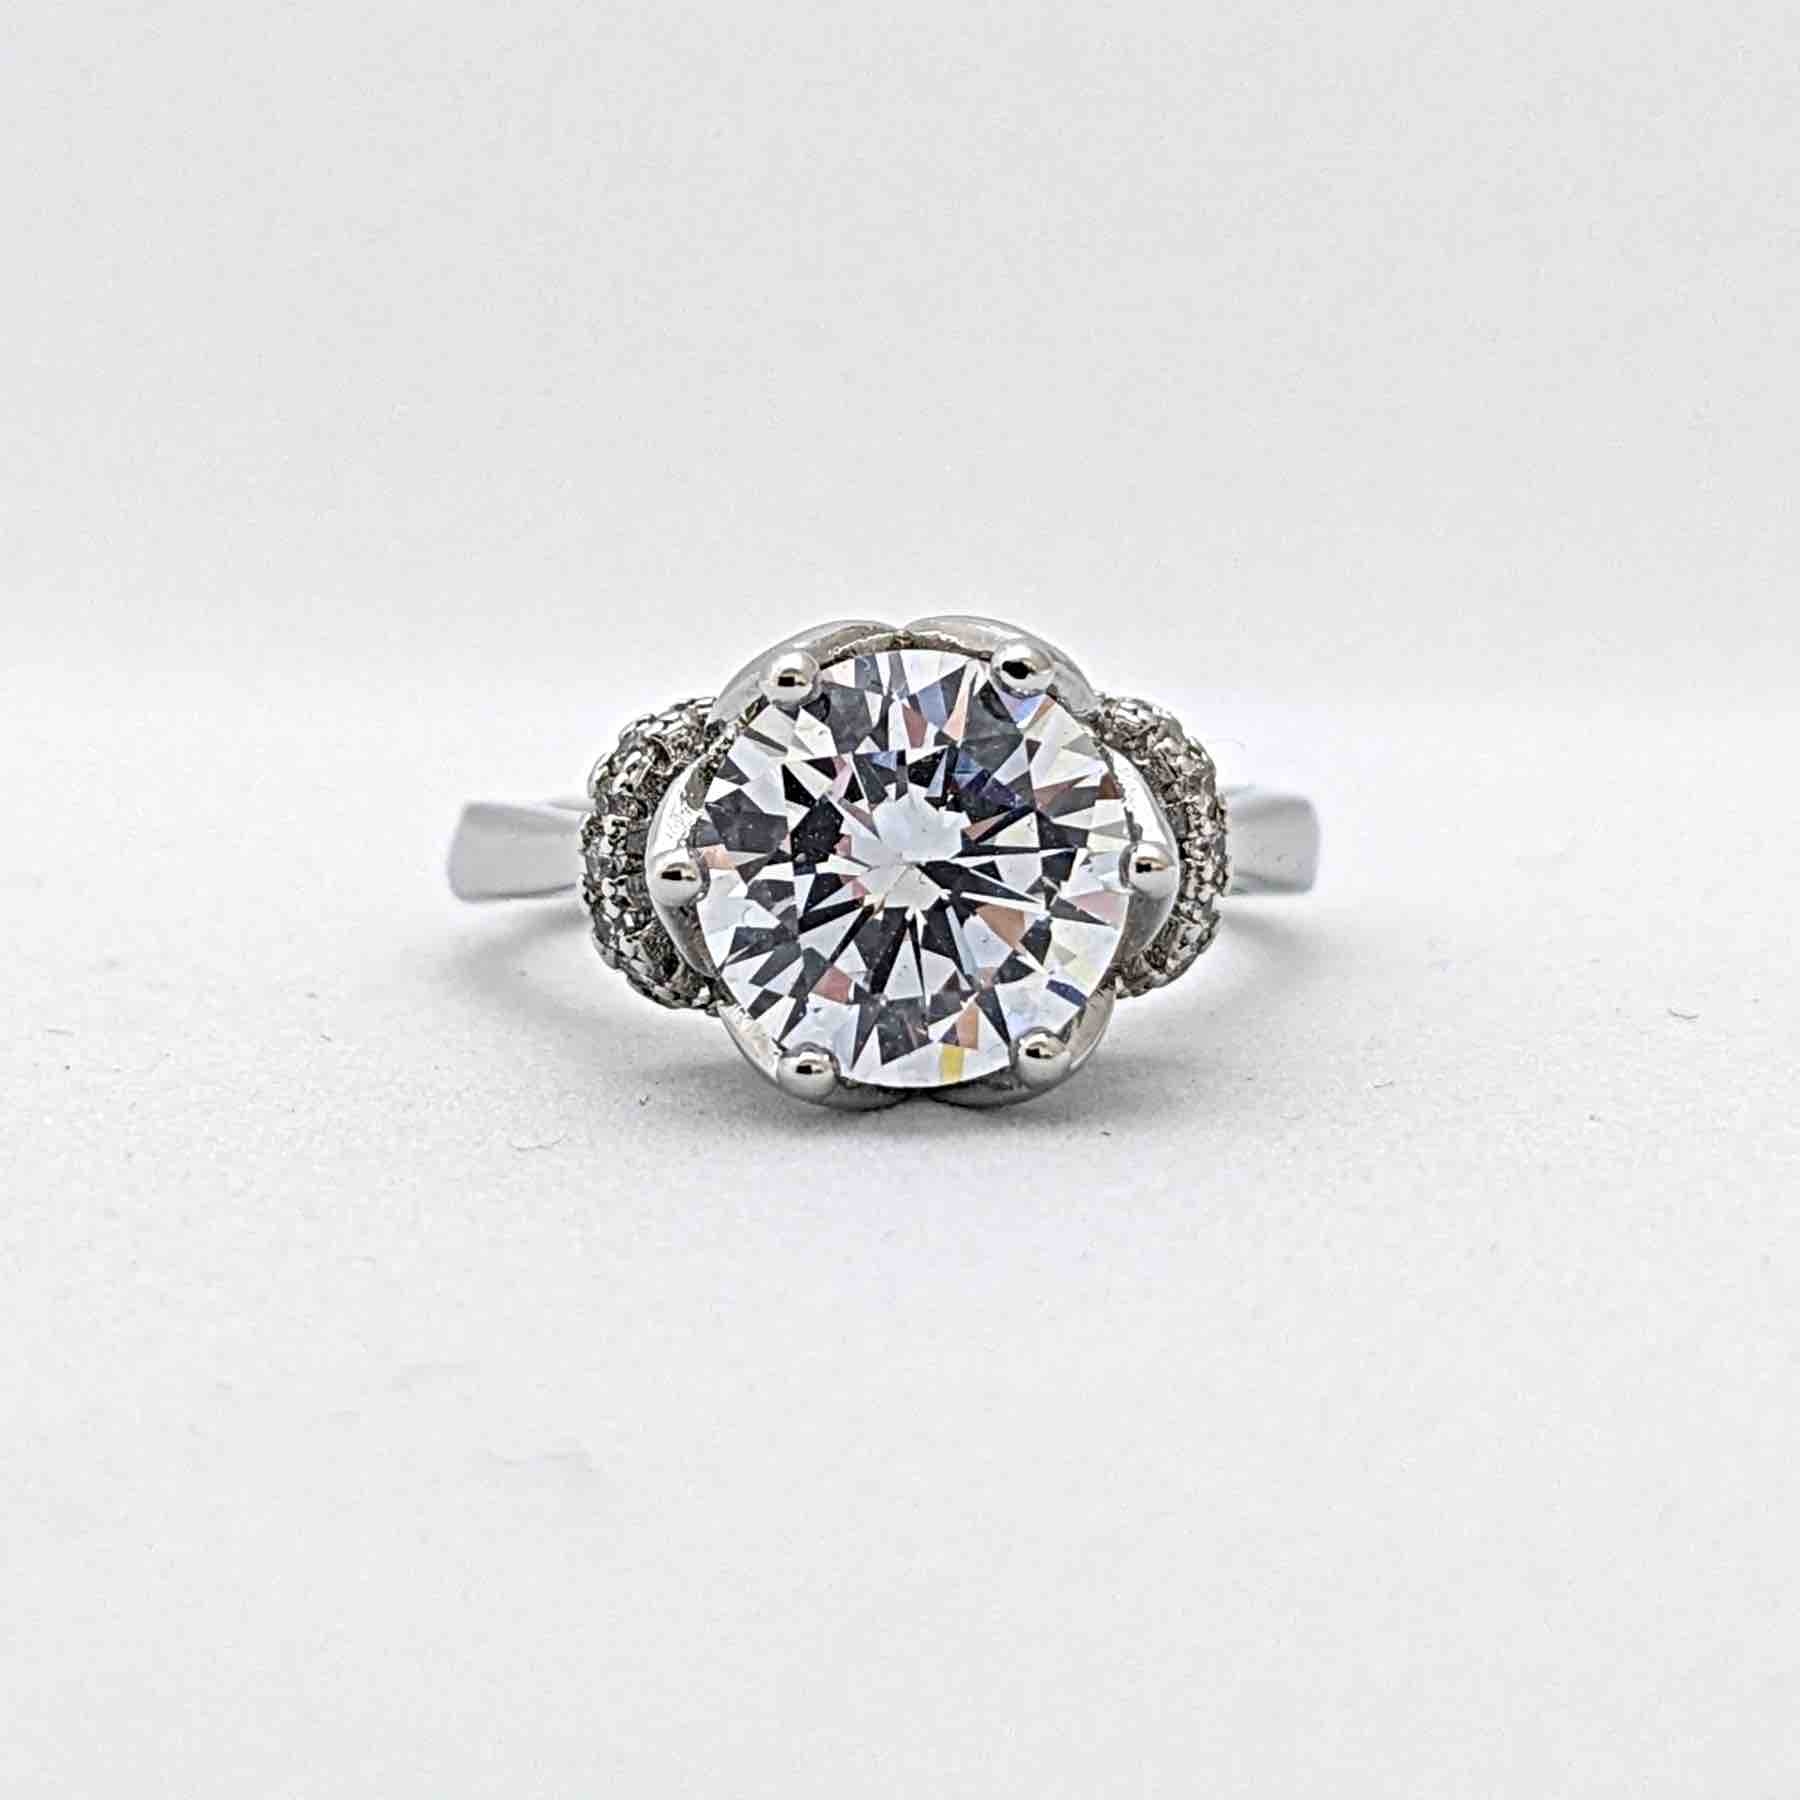 優雅で繊細なフラワーモチーフが大粒のダイヤモンドを優しく支える、特別な婚約指輪